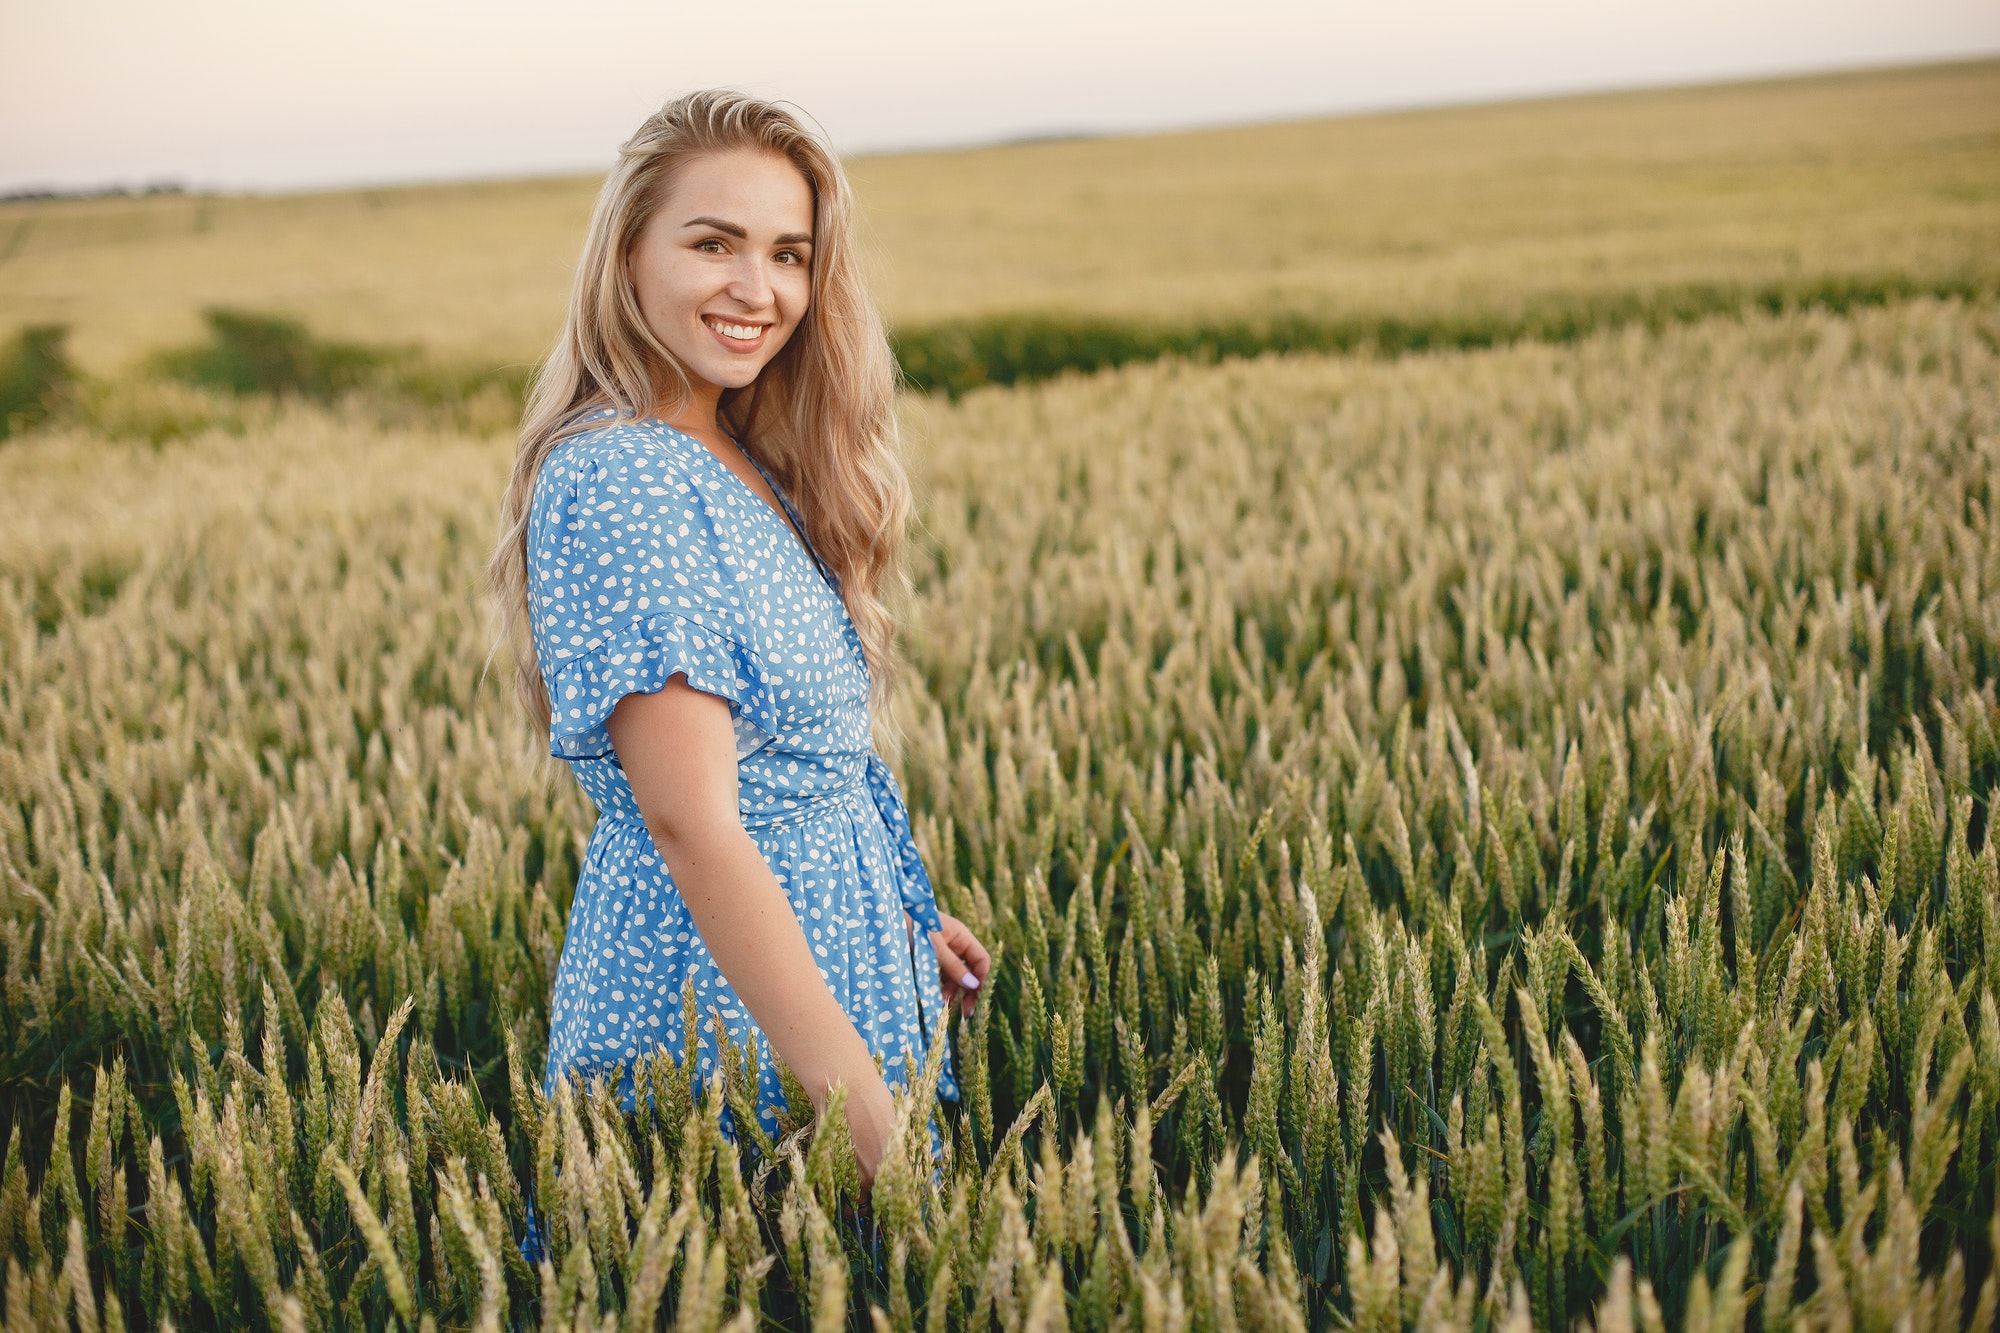 Woman in a blue dress in a wheat field